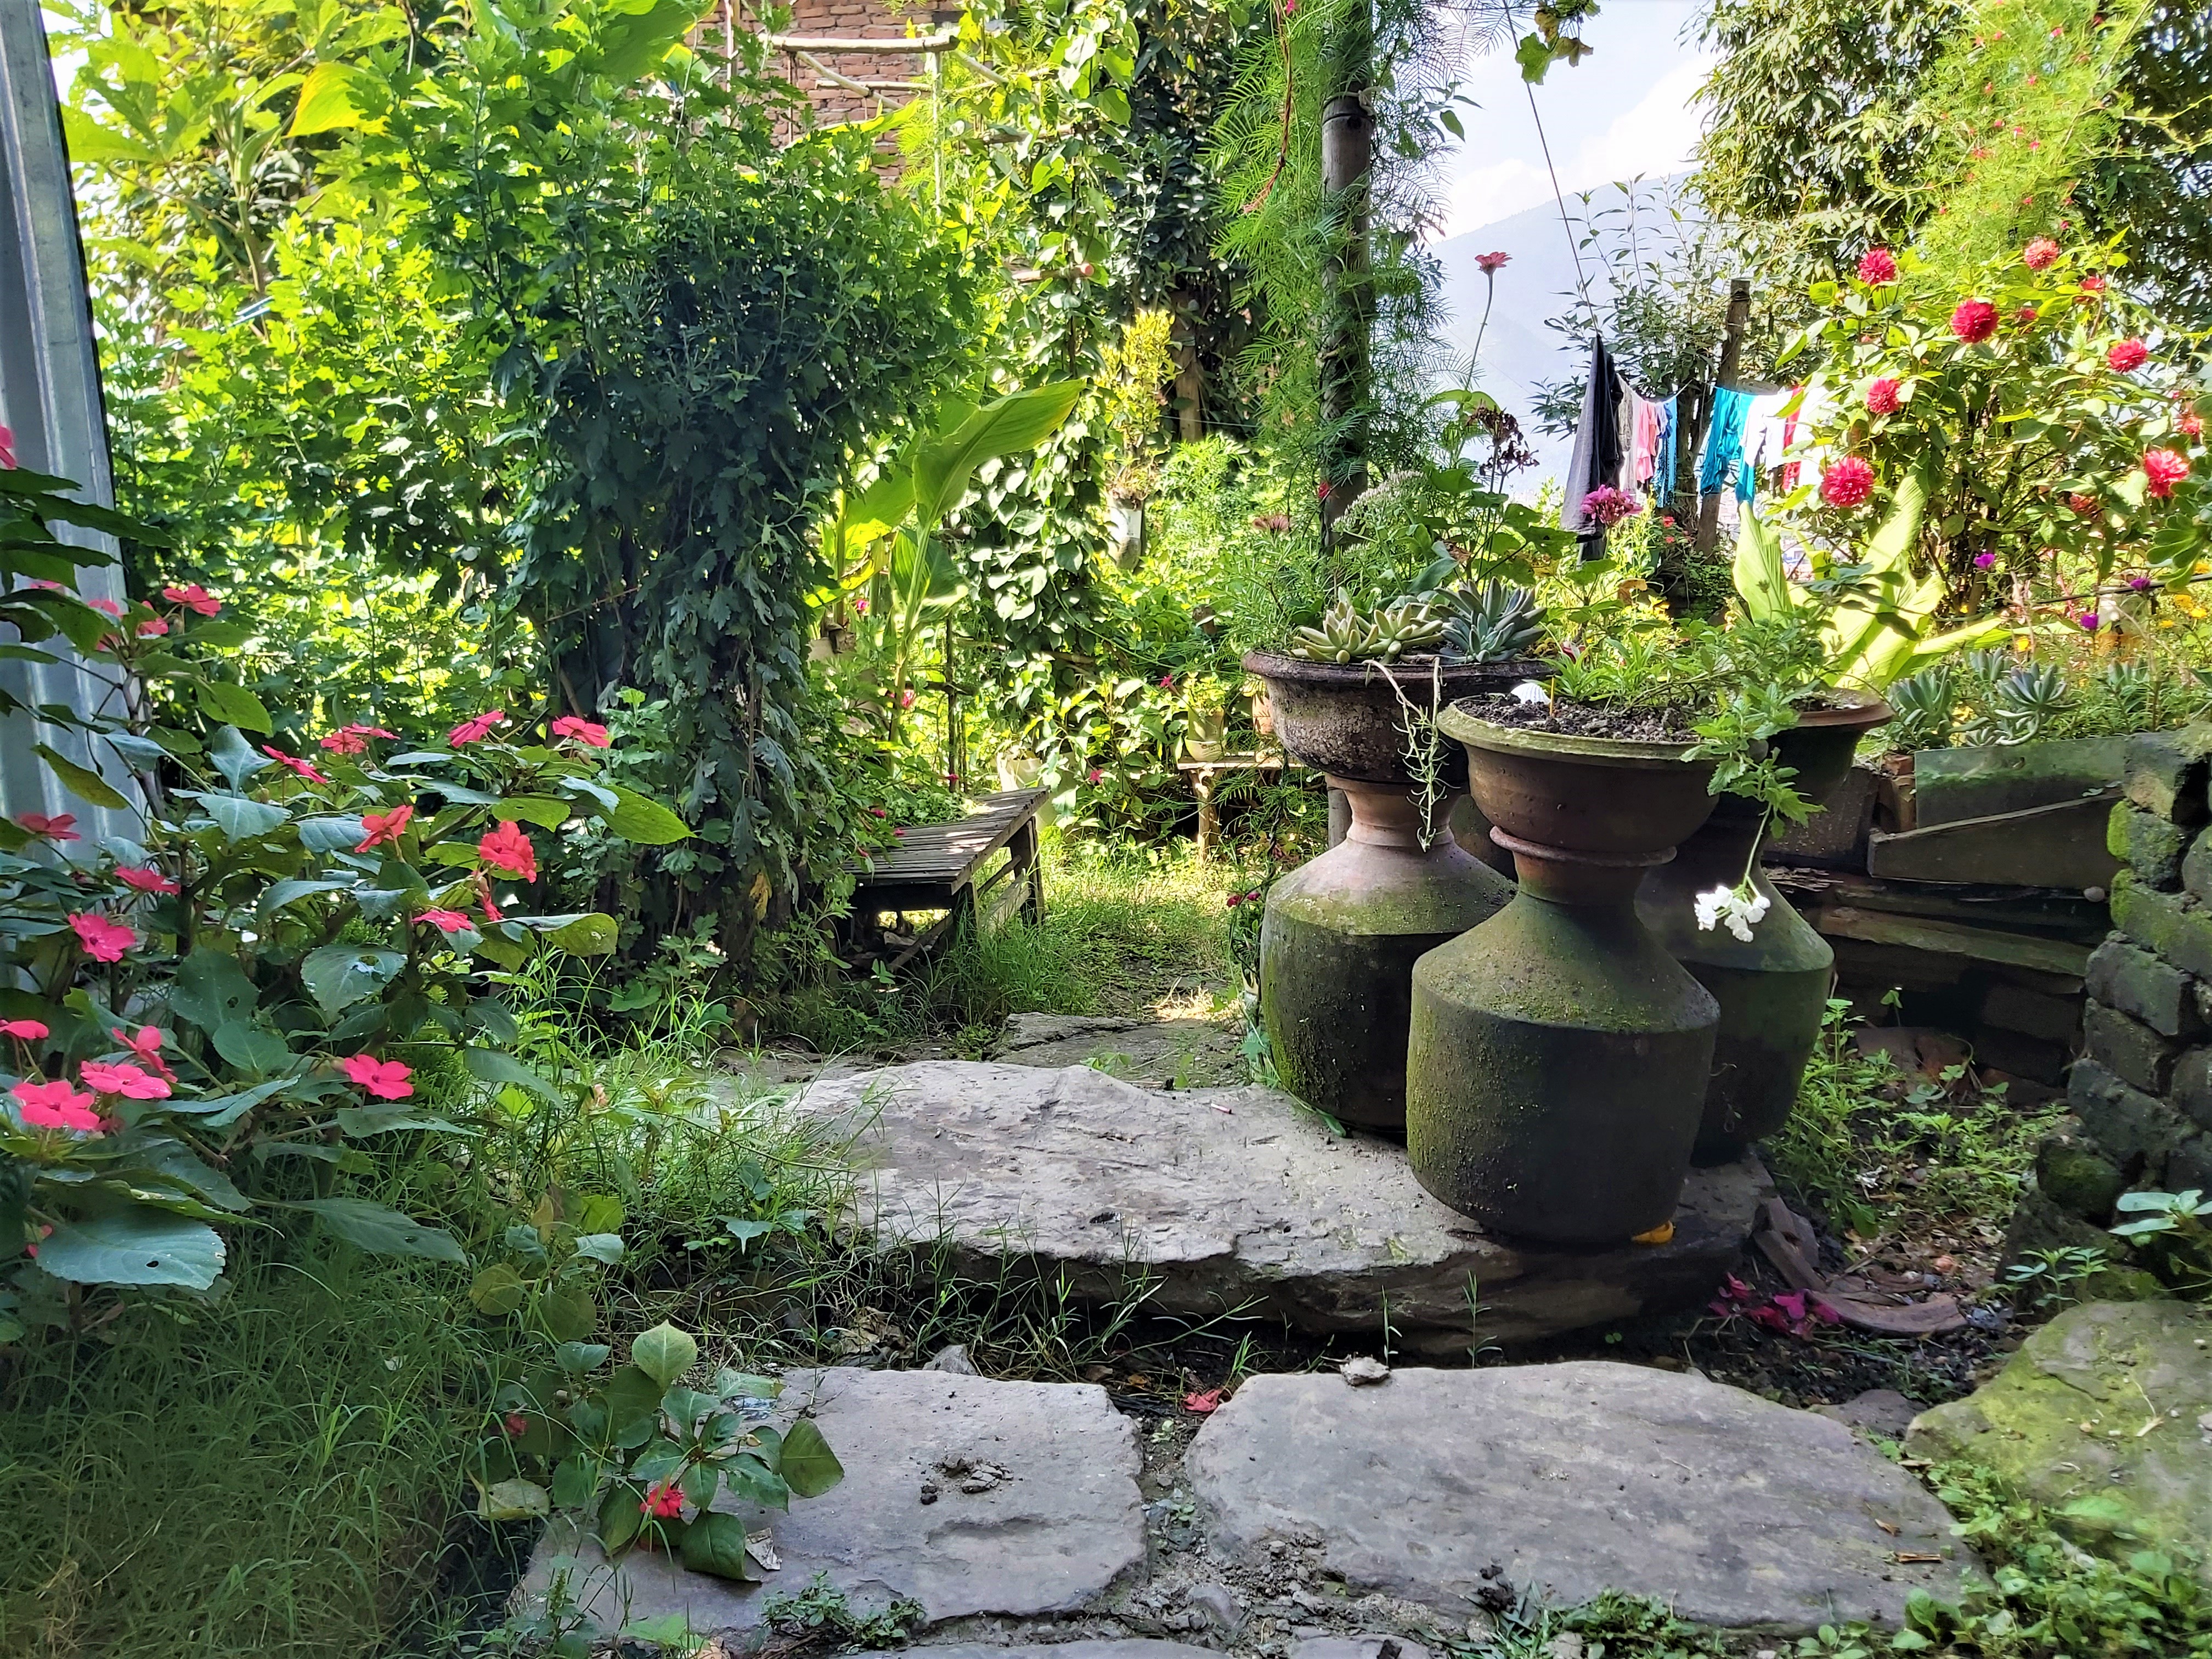 Compact garden